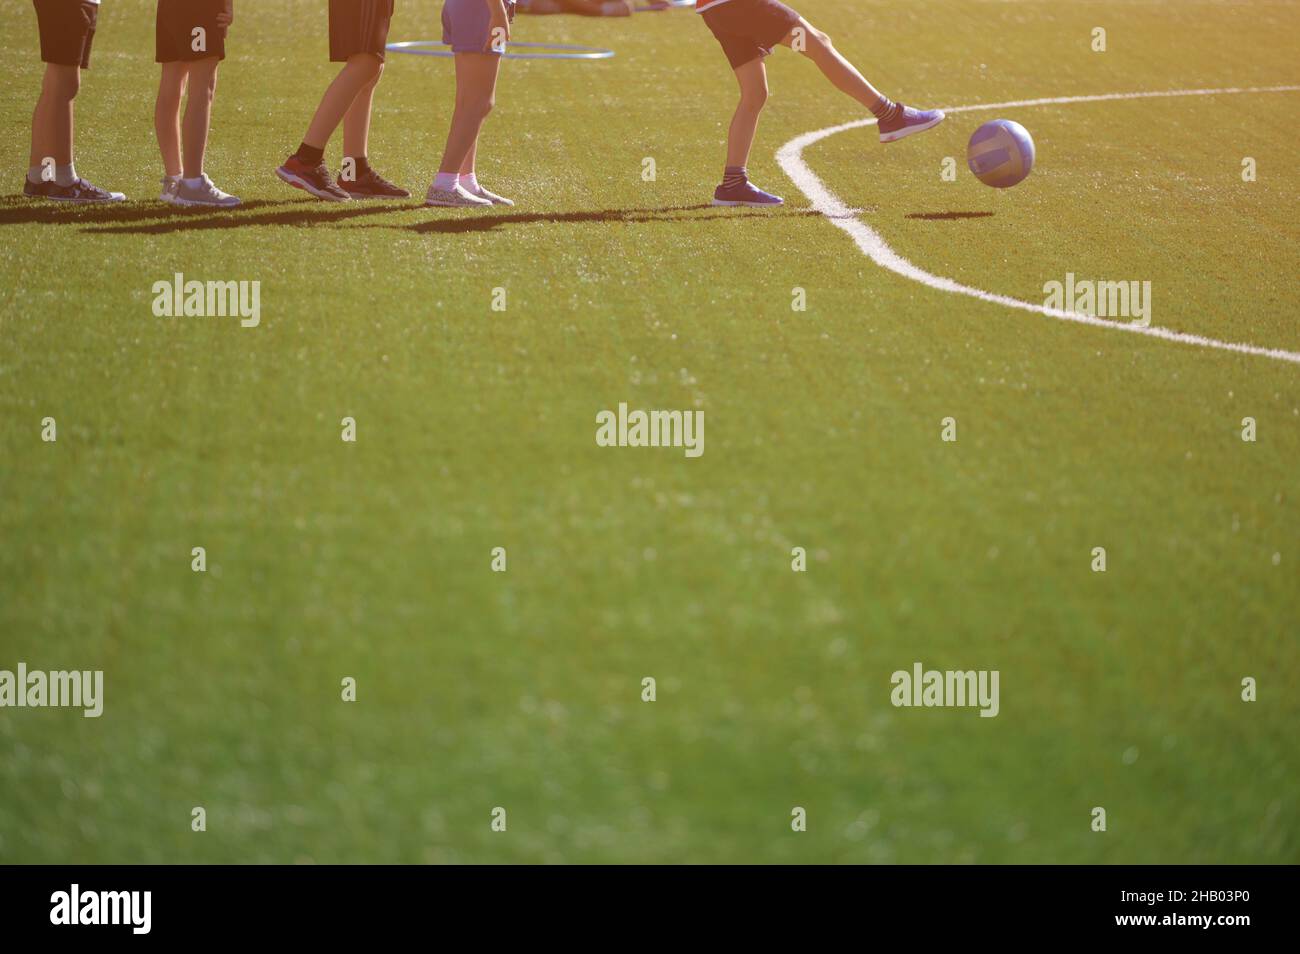 grupo de entrenamiento de fútbol y fútbol para niños pateando pelota en el campo verde Foto de stock